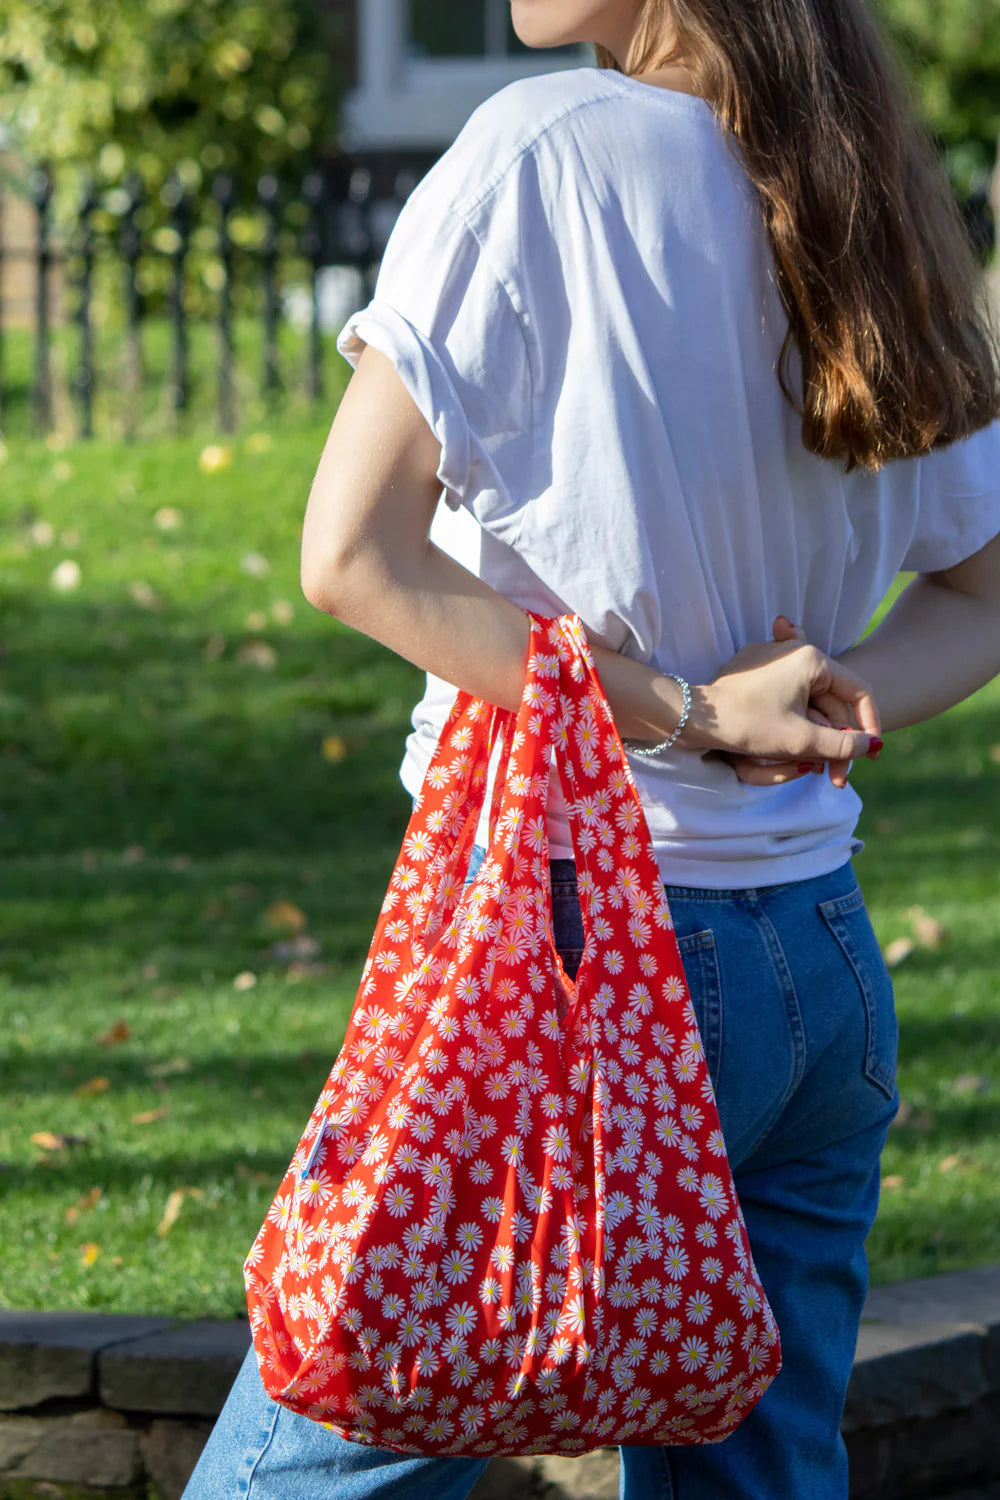 Kind Bag London Reusable Bag - Daisy